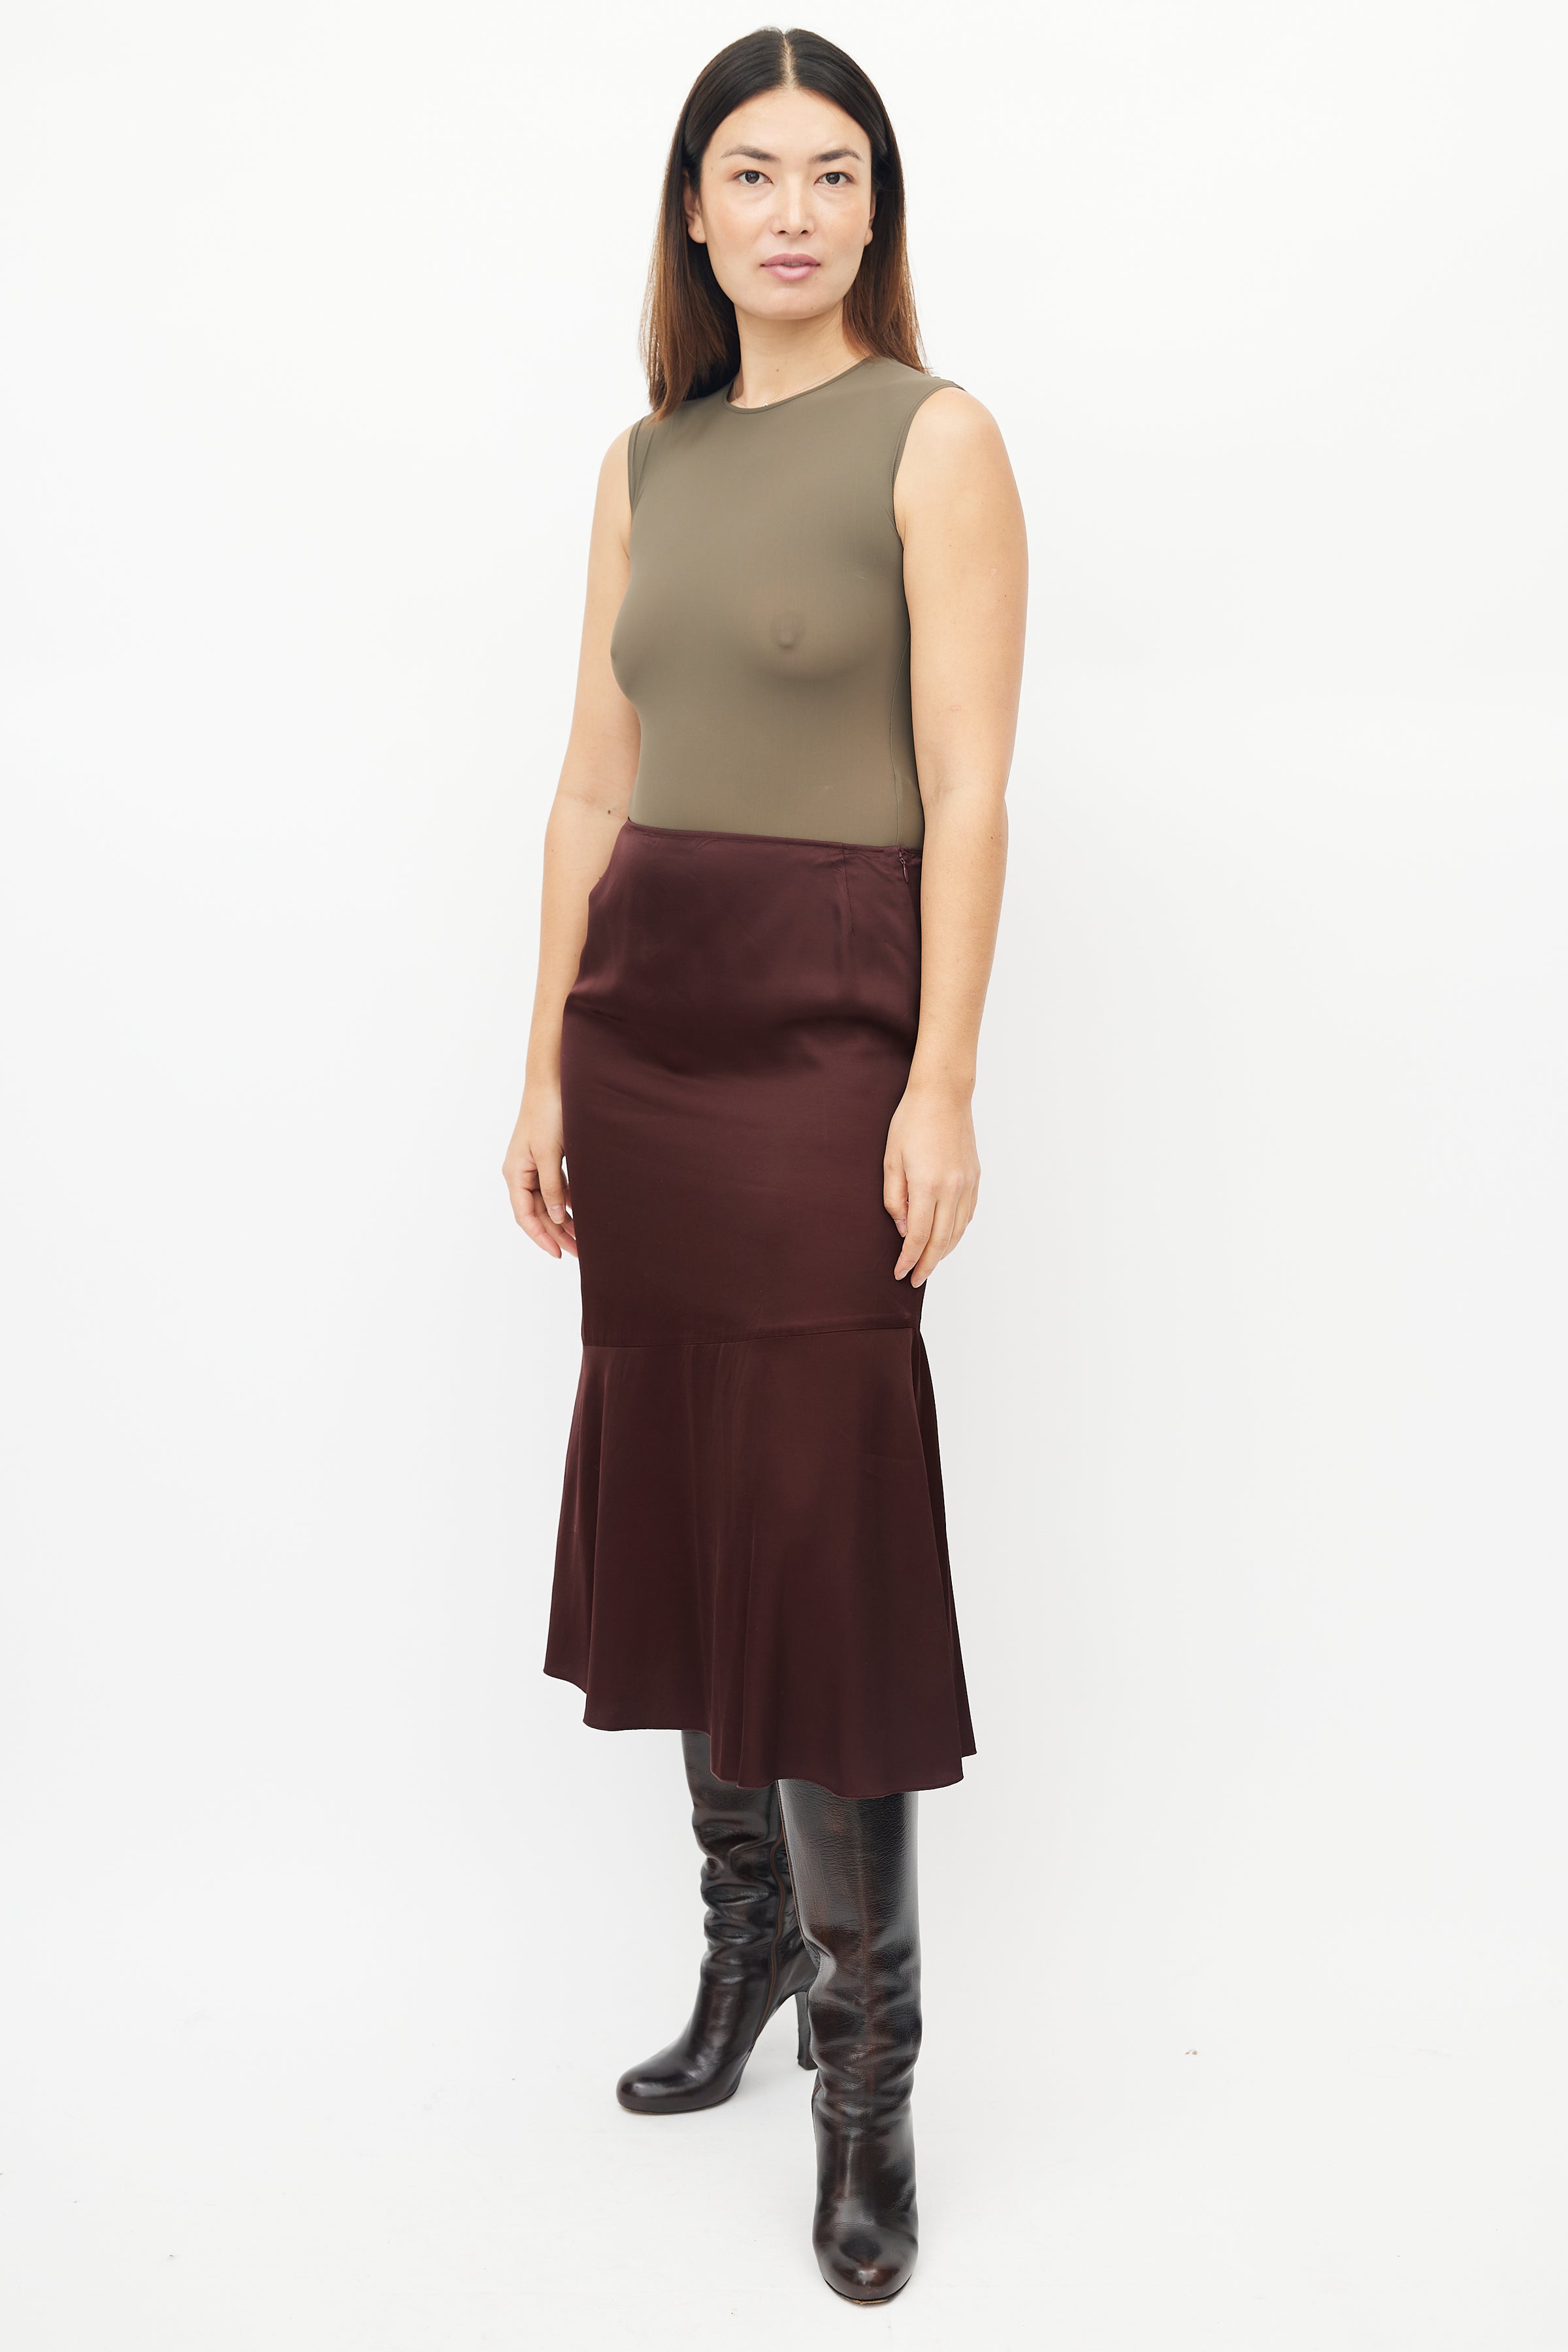 Wine Silk Slip Skirt Midi Burgundy Skirt Satin Bias Cut 100% Silk Skirt Silk  Clothing Silk Basics Midi Maroon Skirt Pencil - Etsy | Silk slip skirt, Burgundy  skirt, Slip skirt